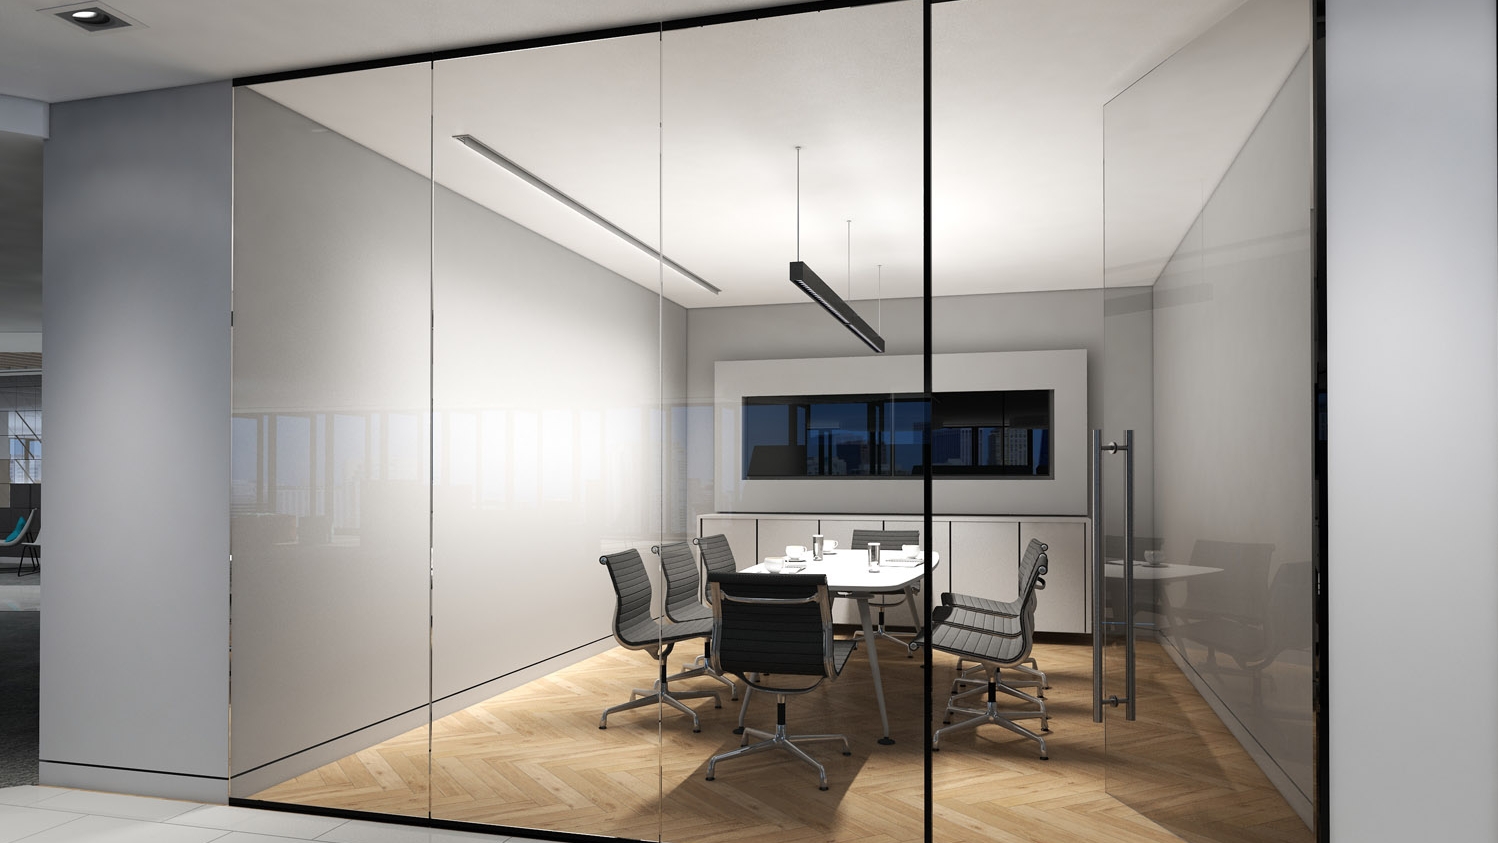 Office lighting solutions by LEDiL